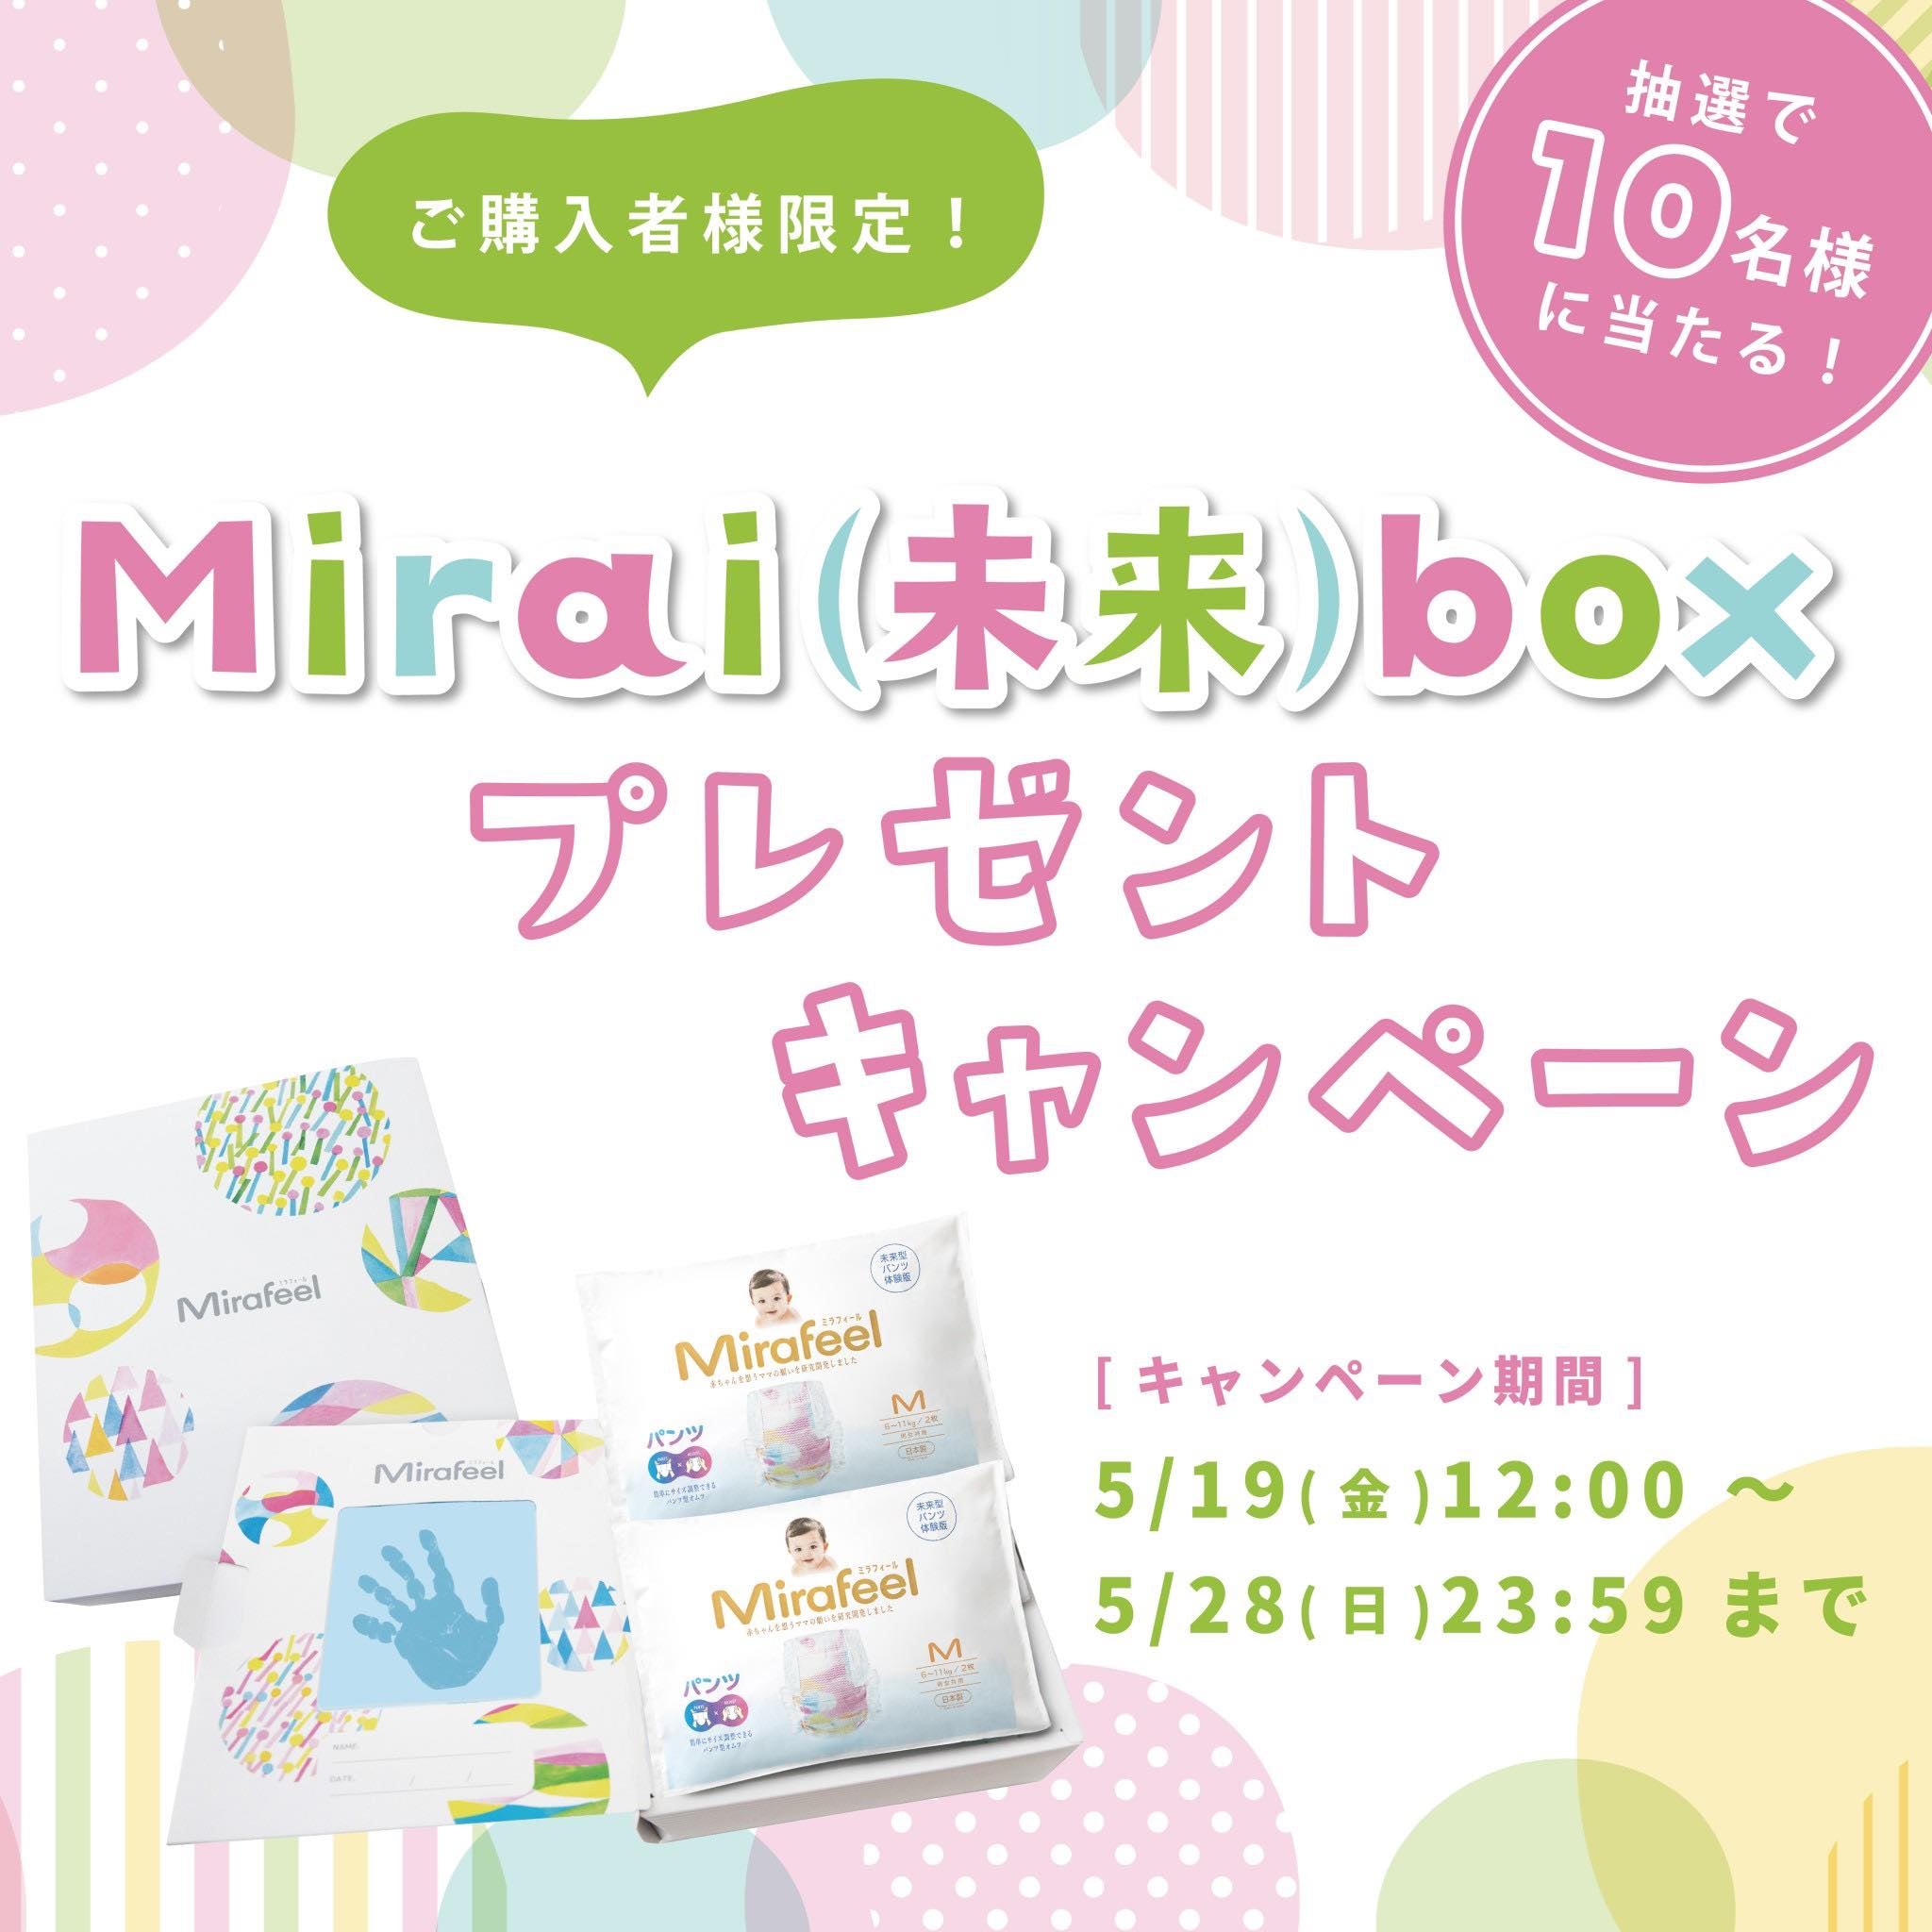 【期間限定】Mirai(未来)boxプレゼントキャンペーン開催✨ - Mirafeel